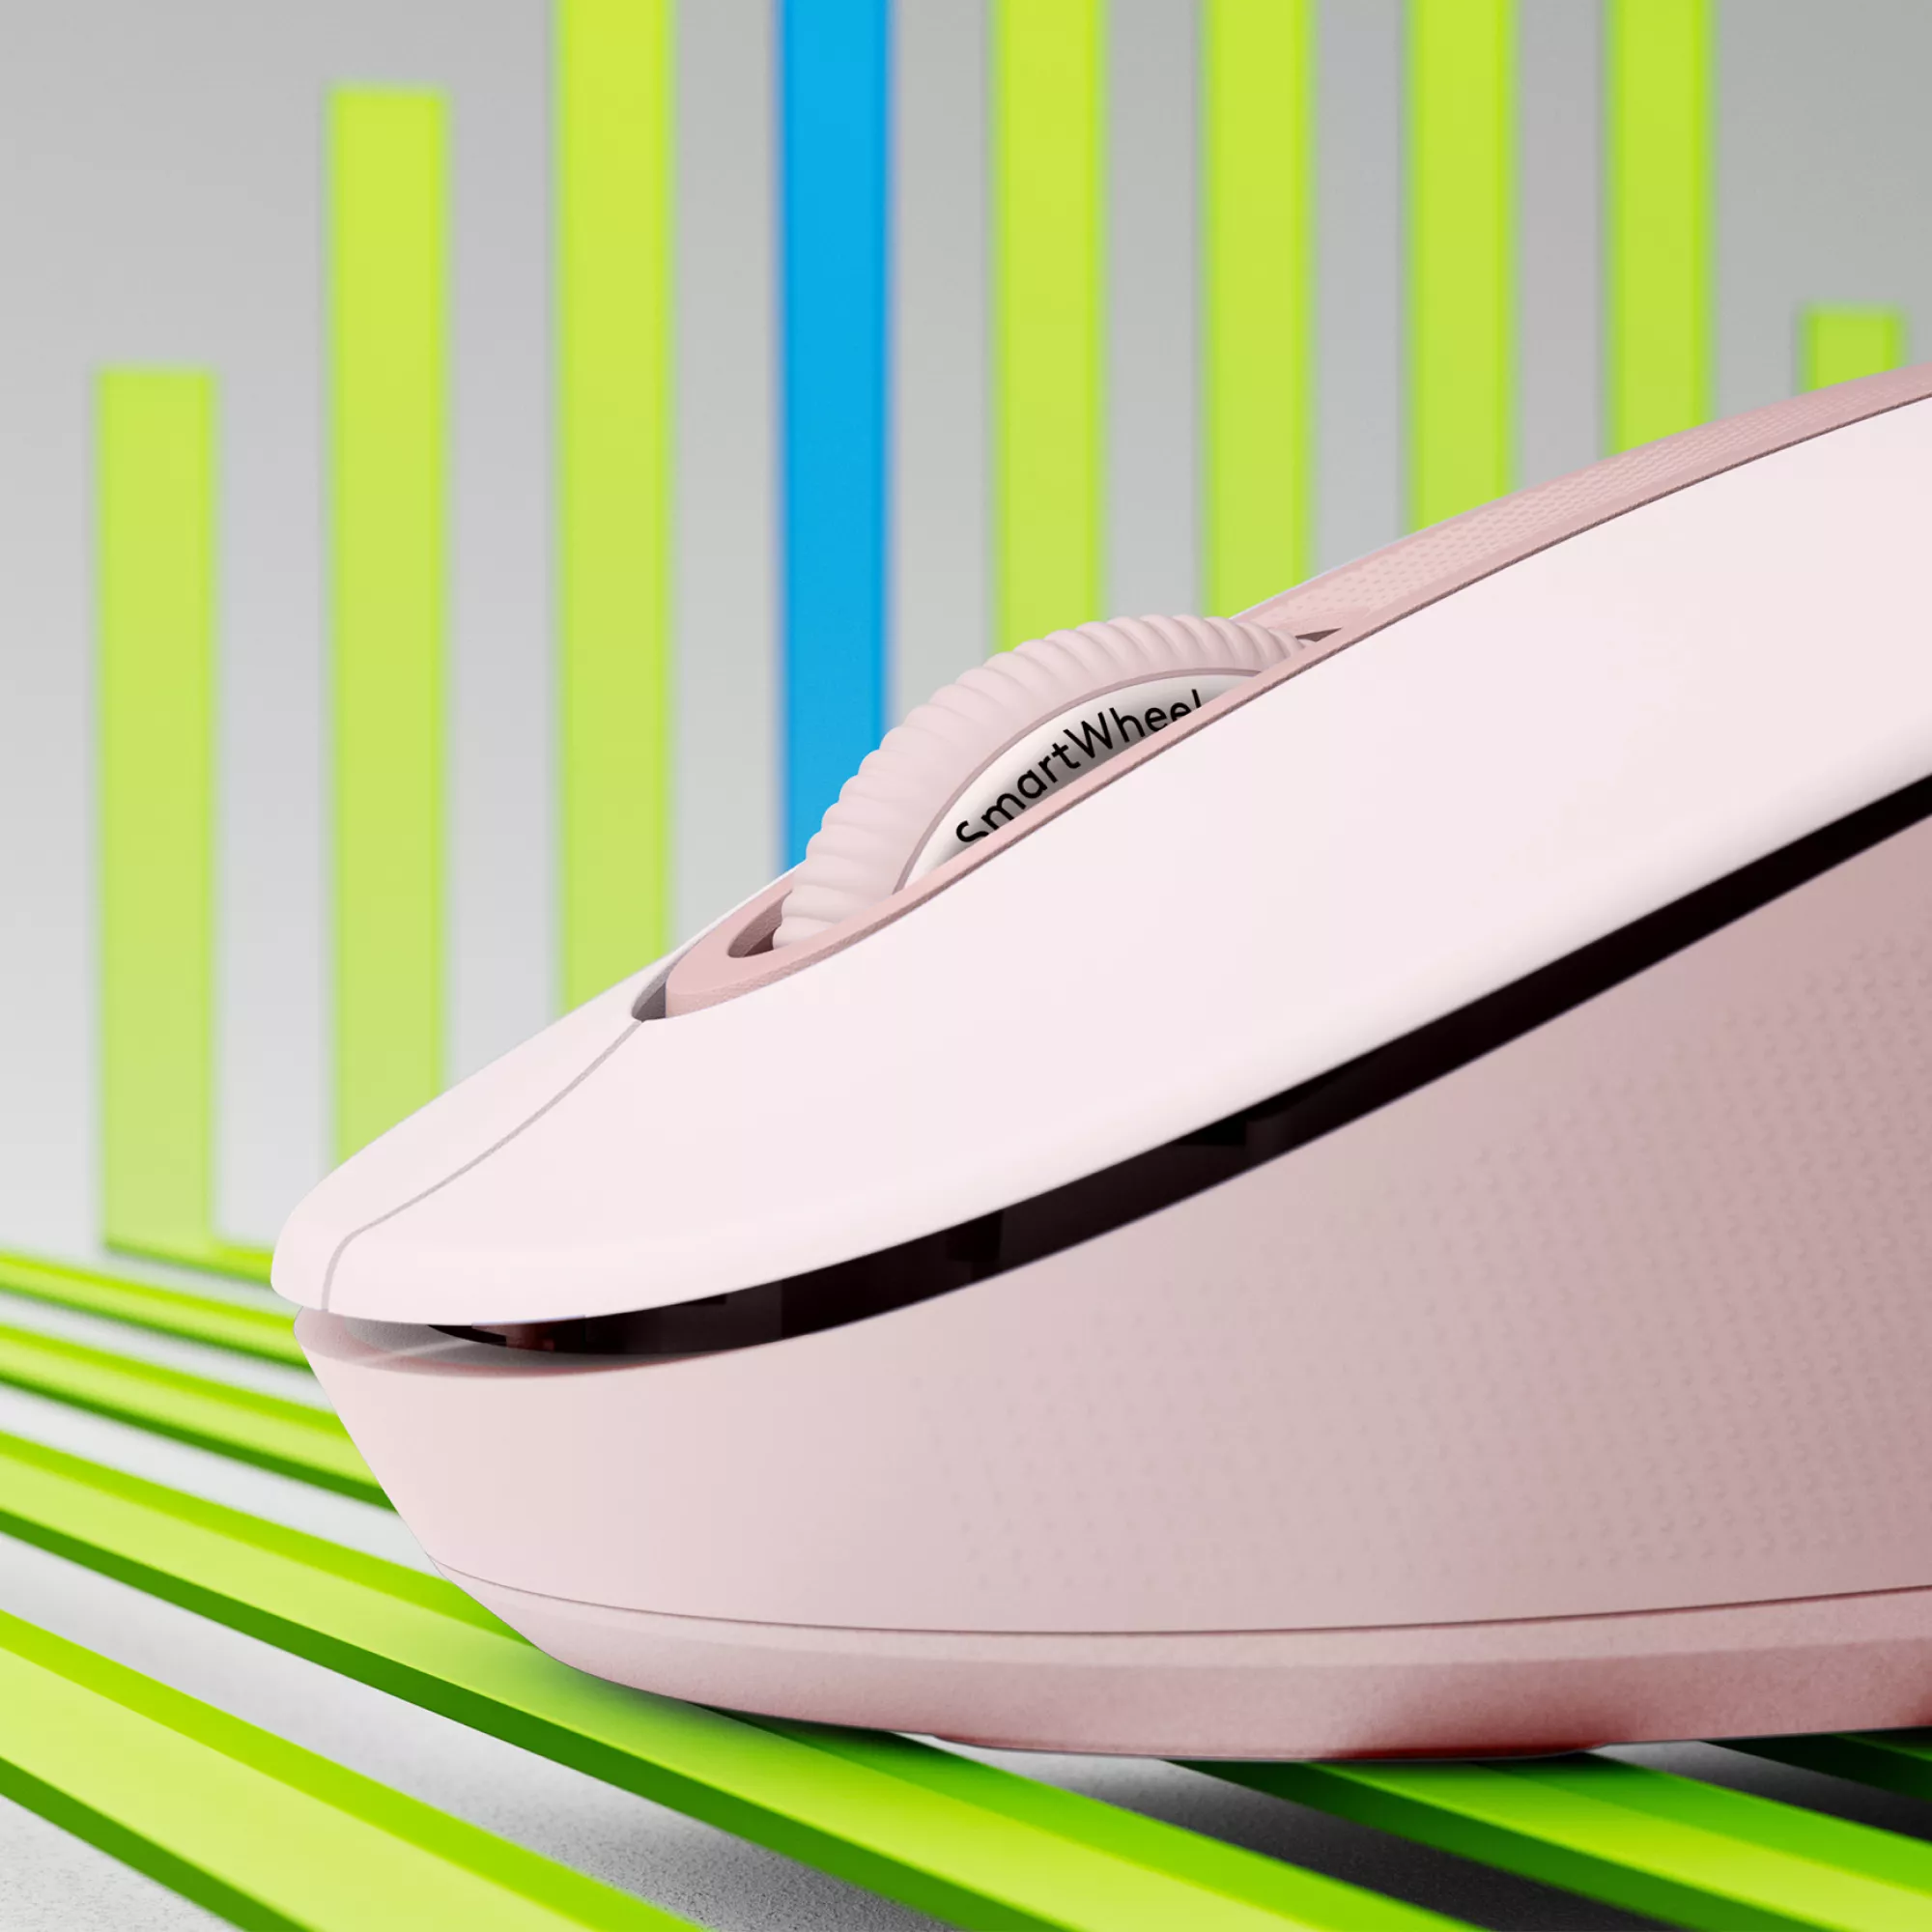 Vente LOGITECH Signature M650 Mouse optical 5 buttons wireless Logitech au meilleur prix - visuel 2